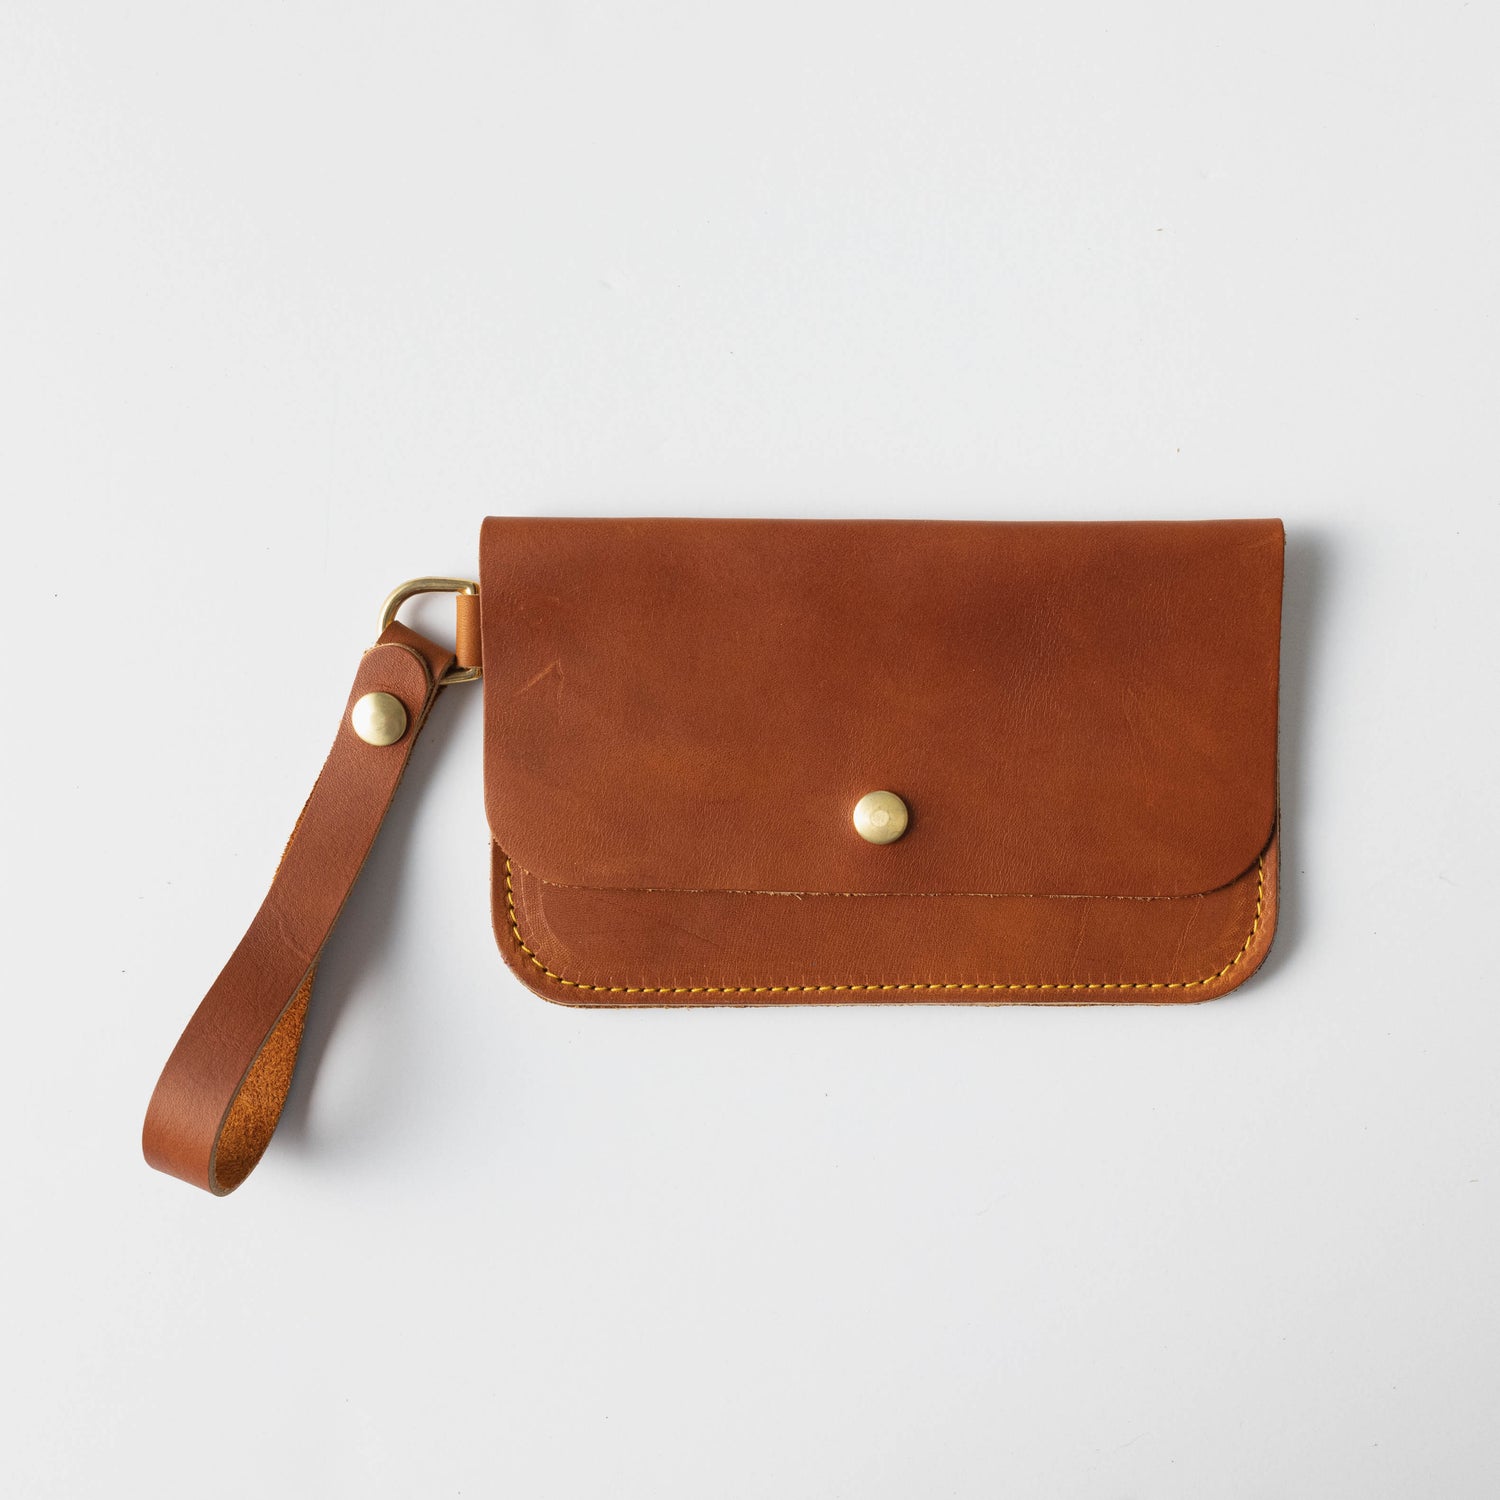 Wallets for Women: Wristlet Clutch | Leather by KMM & Co. No